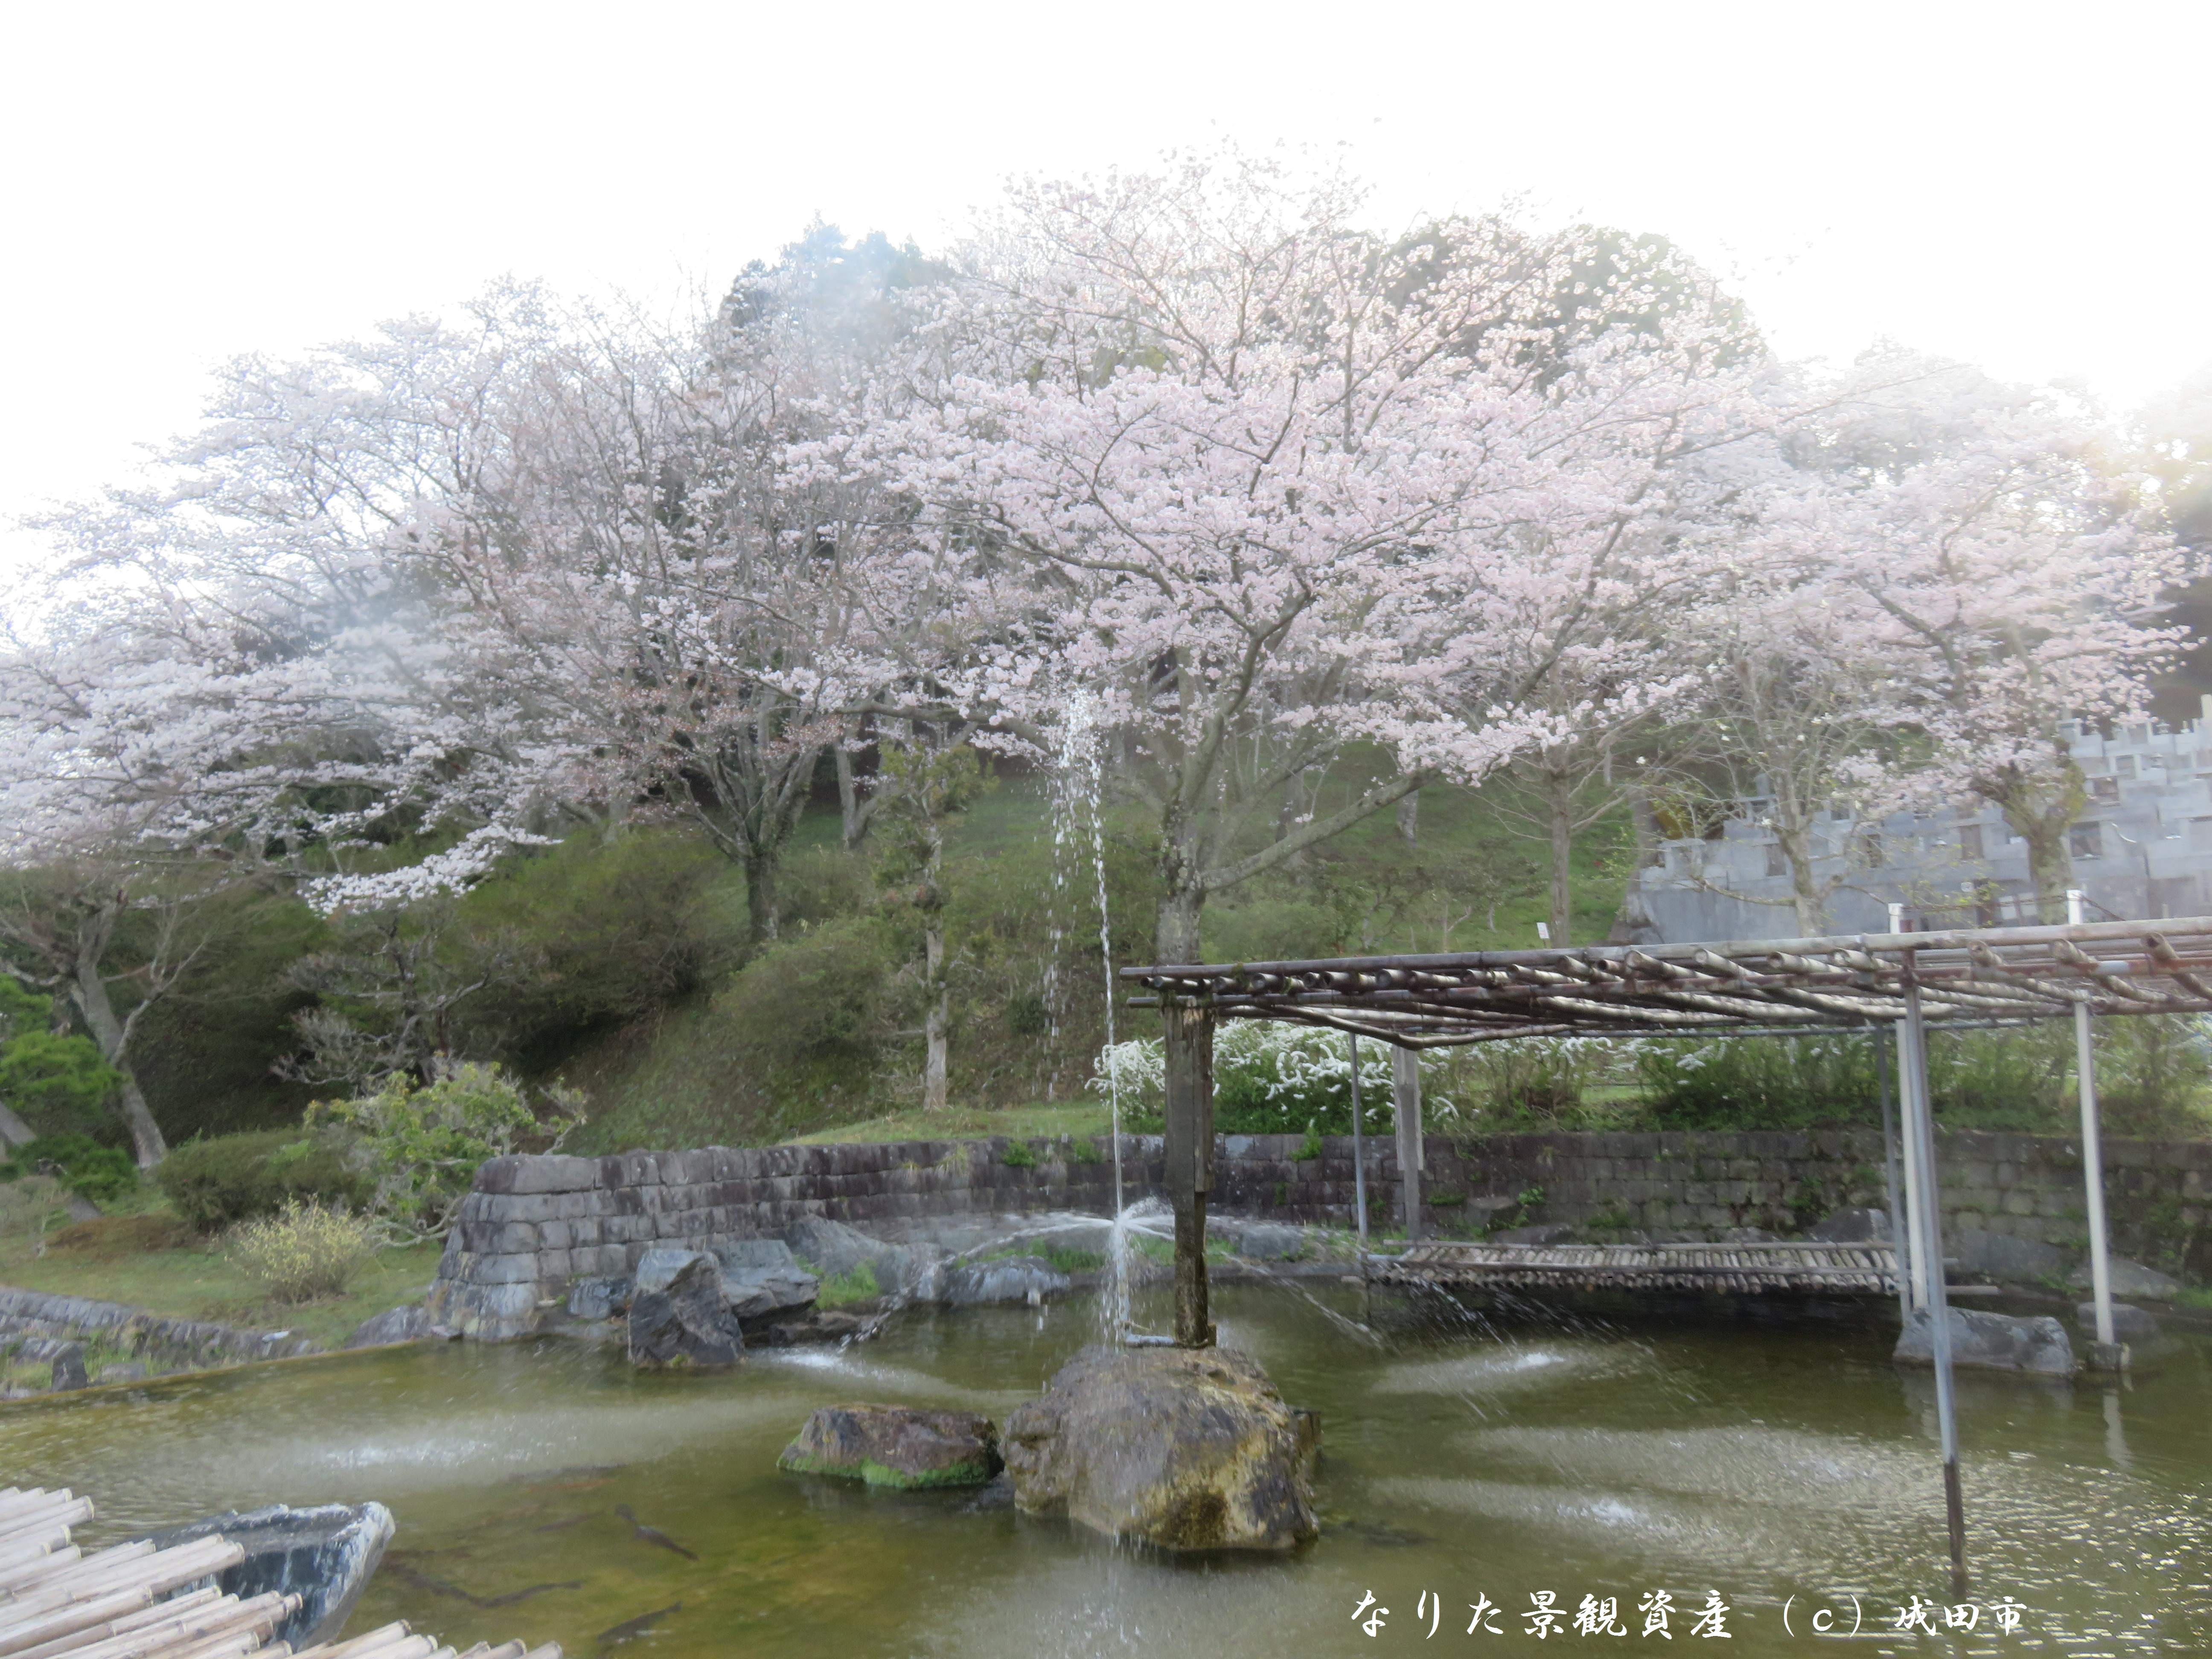 成田市営霊園いずみ聖地公園の景観写真2